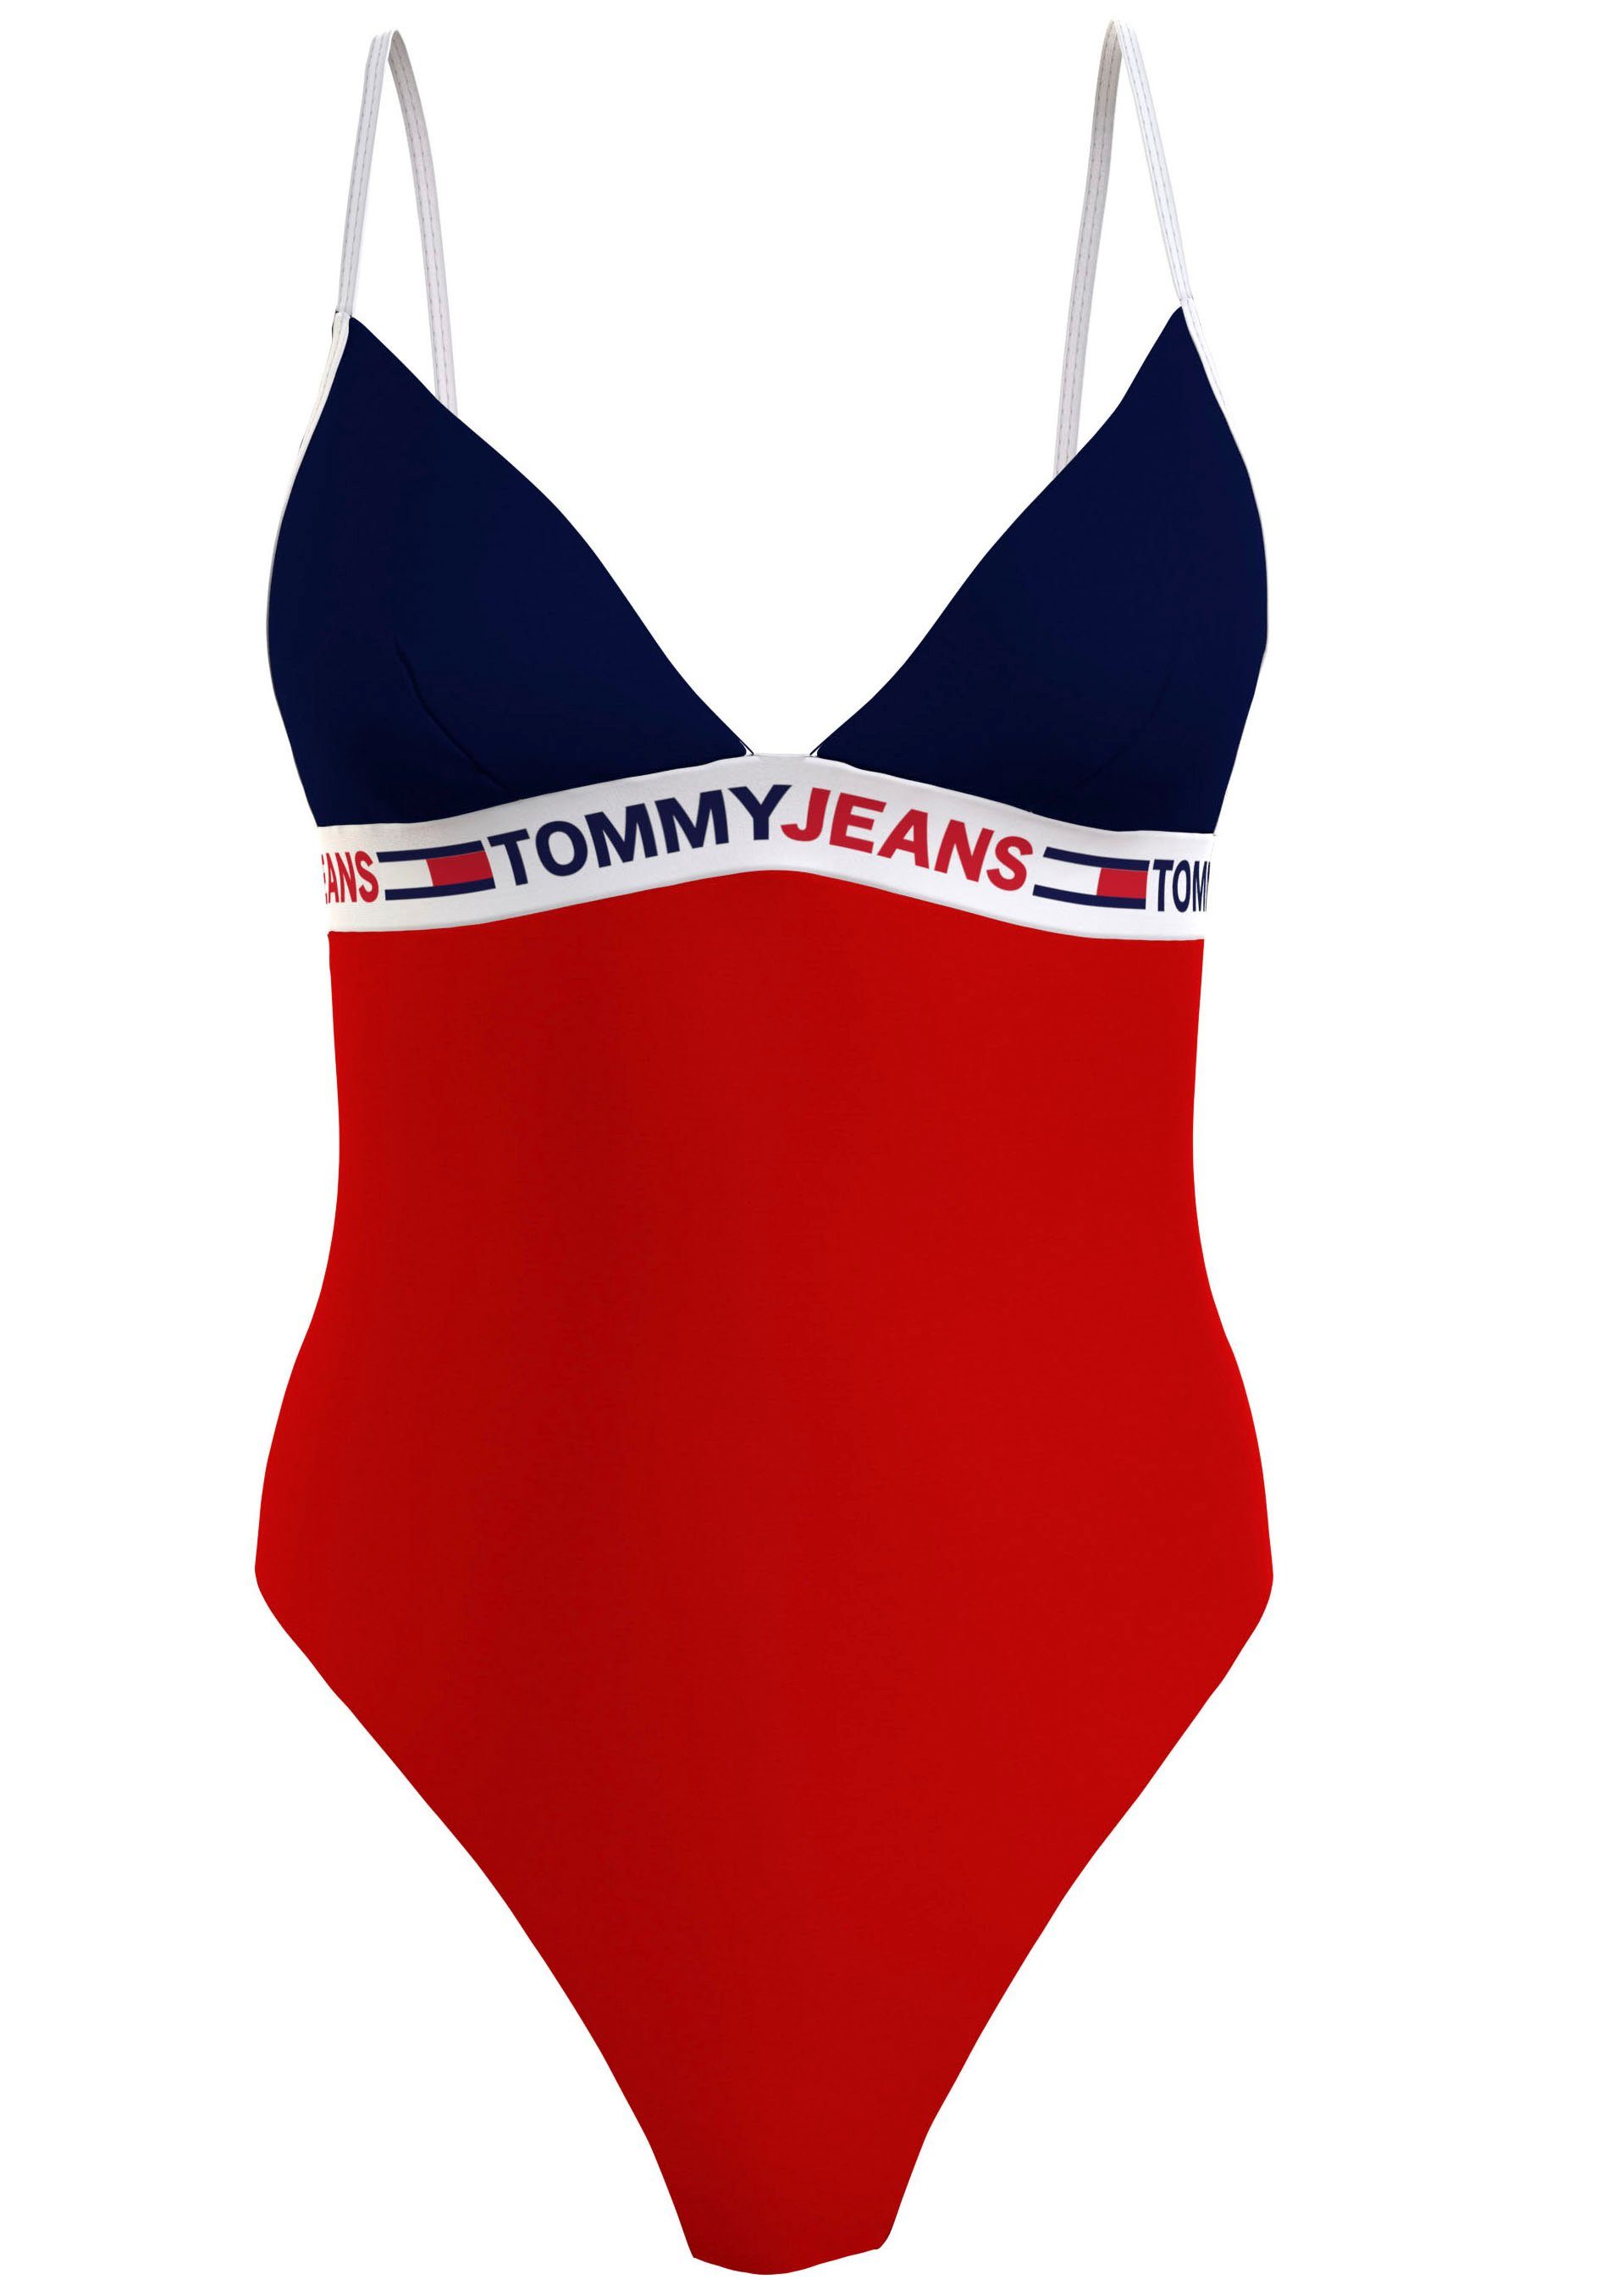 Tommy Hilfiger Damen Bademode online kaufen | OTTO